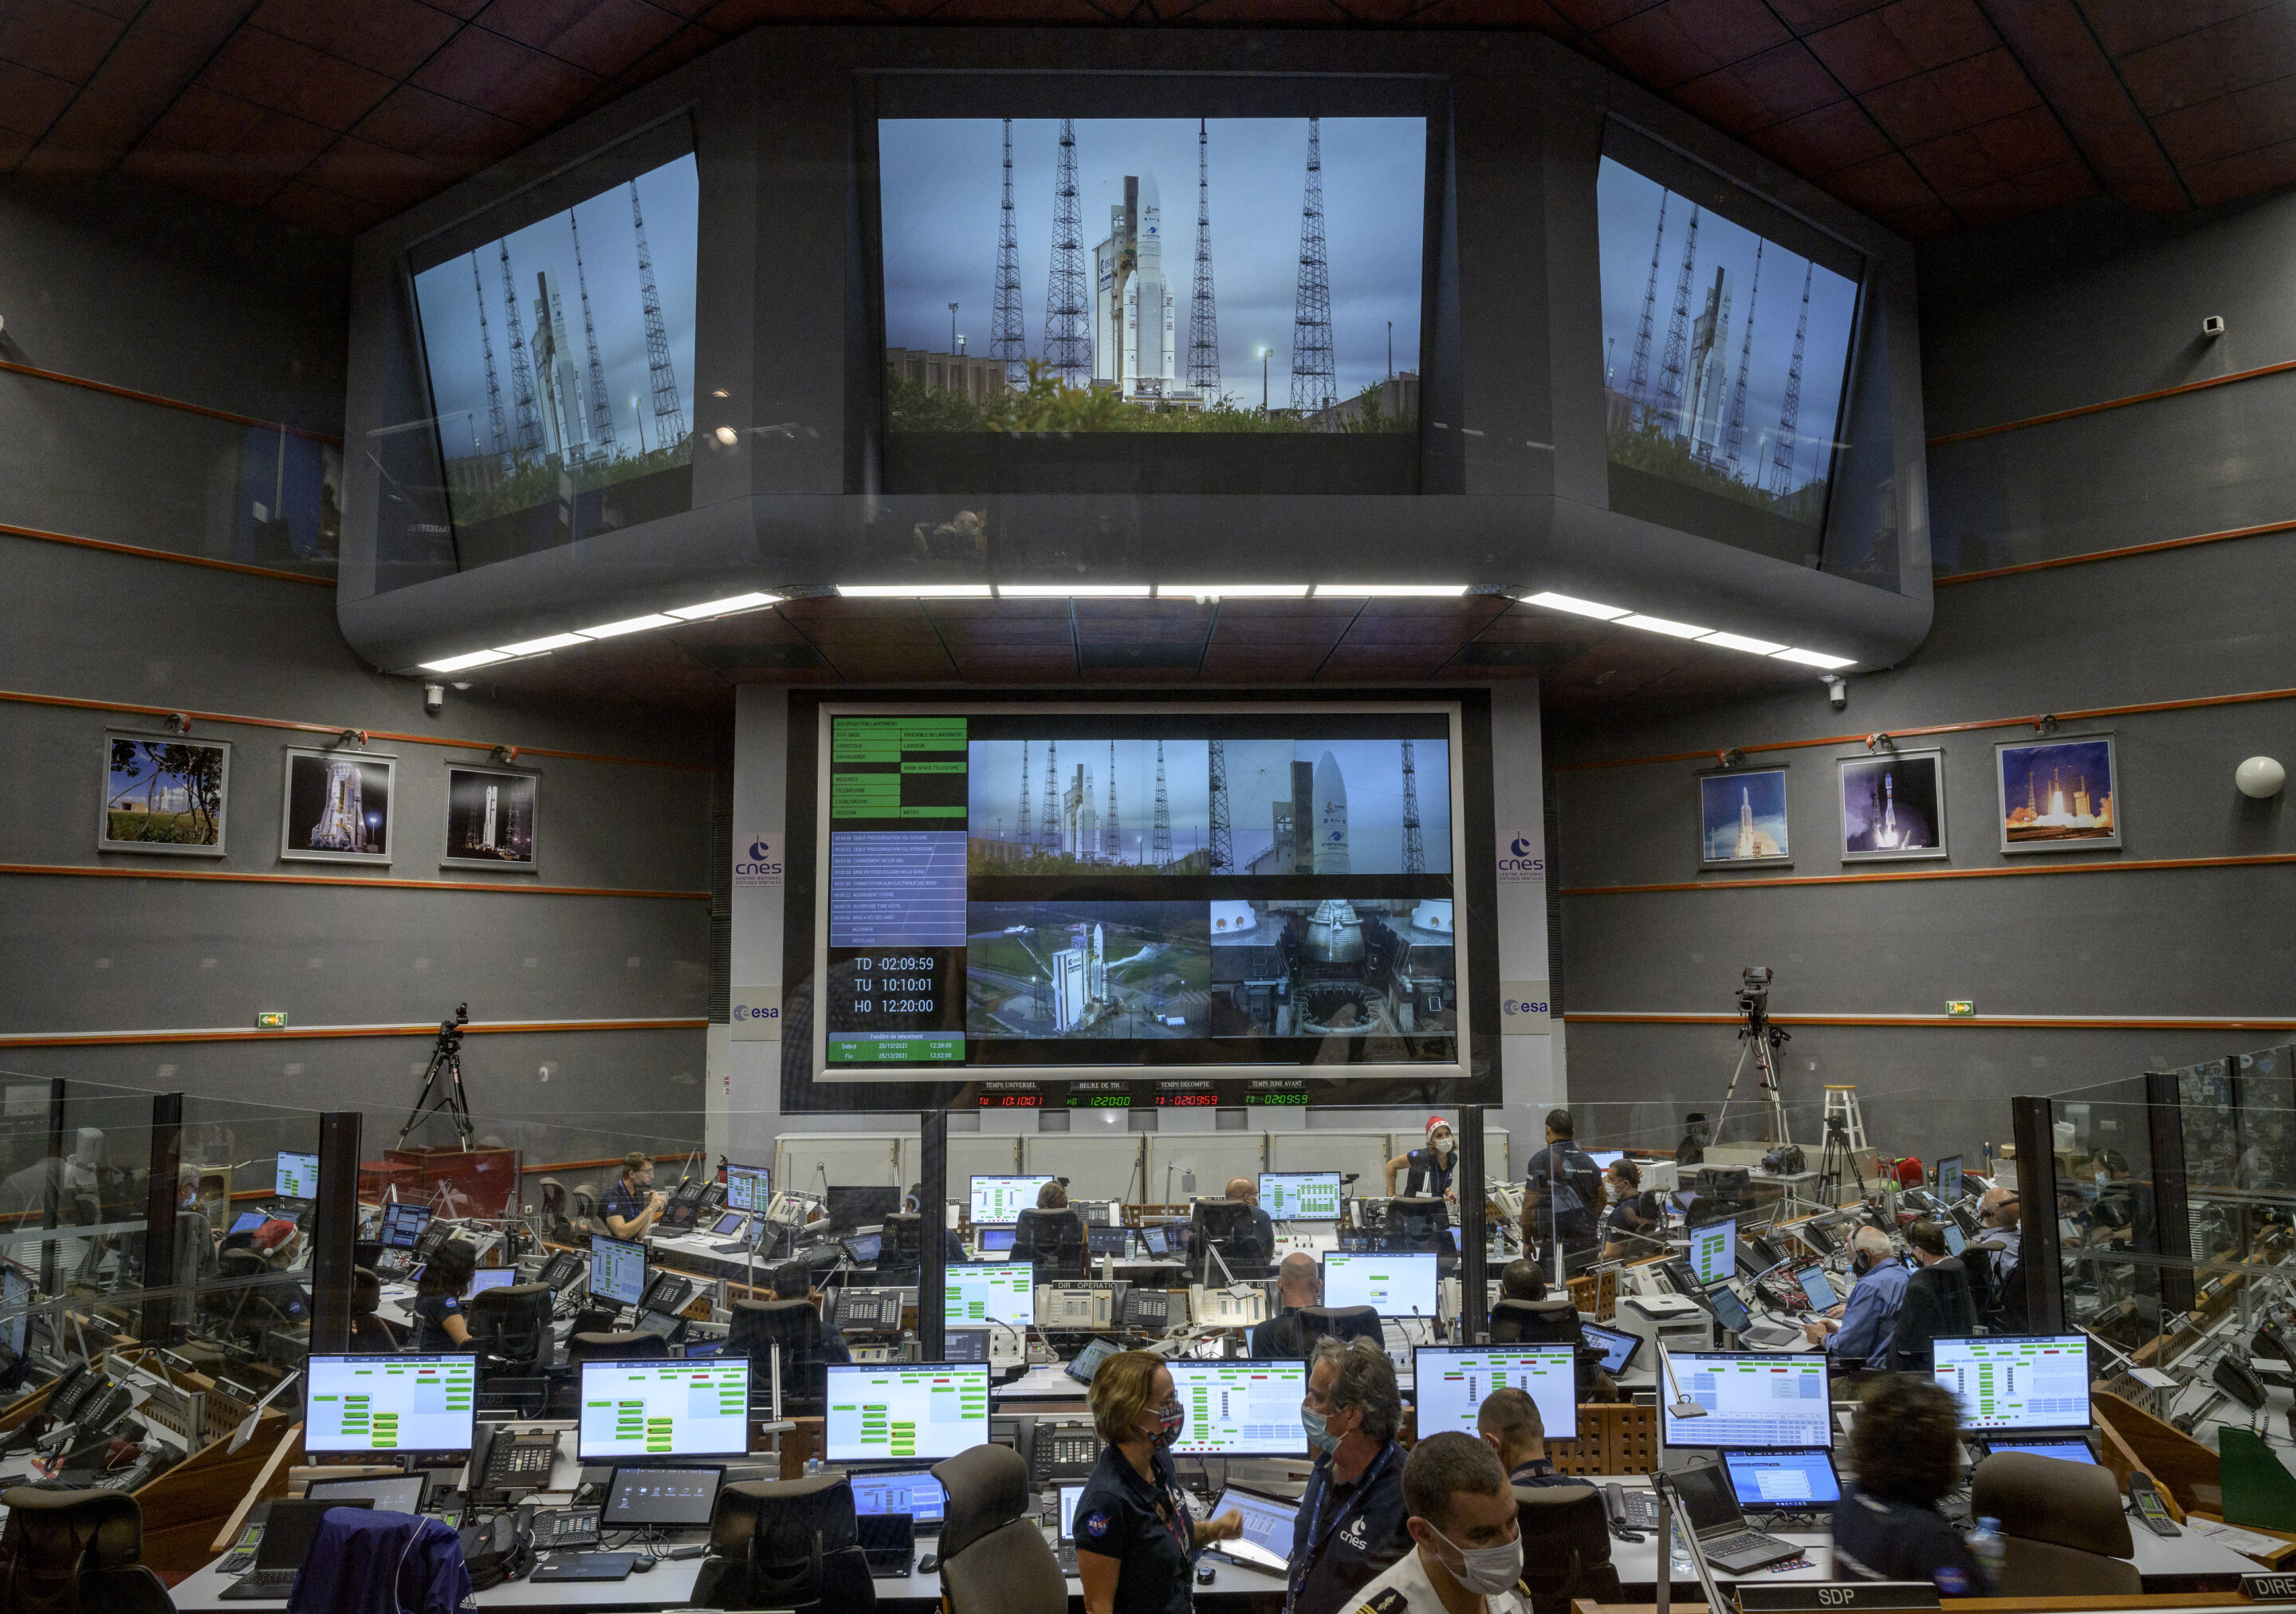 Los equipos de lanzamiento monitorean la cuenta regresiva para el lanzamiento del cohete Ariane 5 de Arianespace que lleva el telescopio espacial James Webb de la NASA, el sábado 25 de diciembre de 2021, en el Centro Júpiter en el Centro Espacial de Guayana en Kourou, Guayana Francesa. El telescopio espacial más grande y poderoso del mundo ha despegado en una búsqueda de alto riesgo para contemplar la luz de las primeras estrellas y galaxias. El telescopio espacial James Webb de la NASA se disparó el sábado desde la Guayana Francesa en América del Sur. Crédito: NASA / Bill Ingalls / NASA vía AP